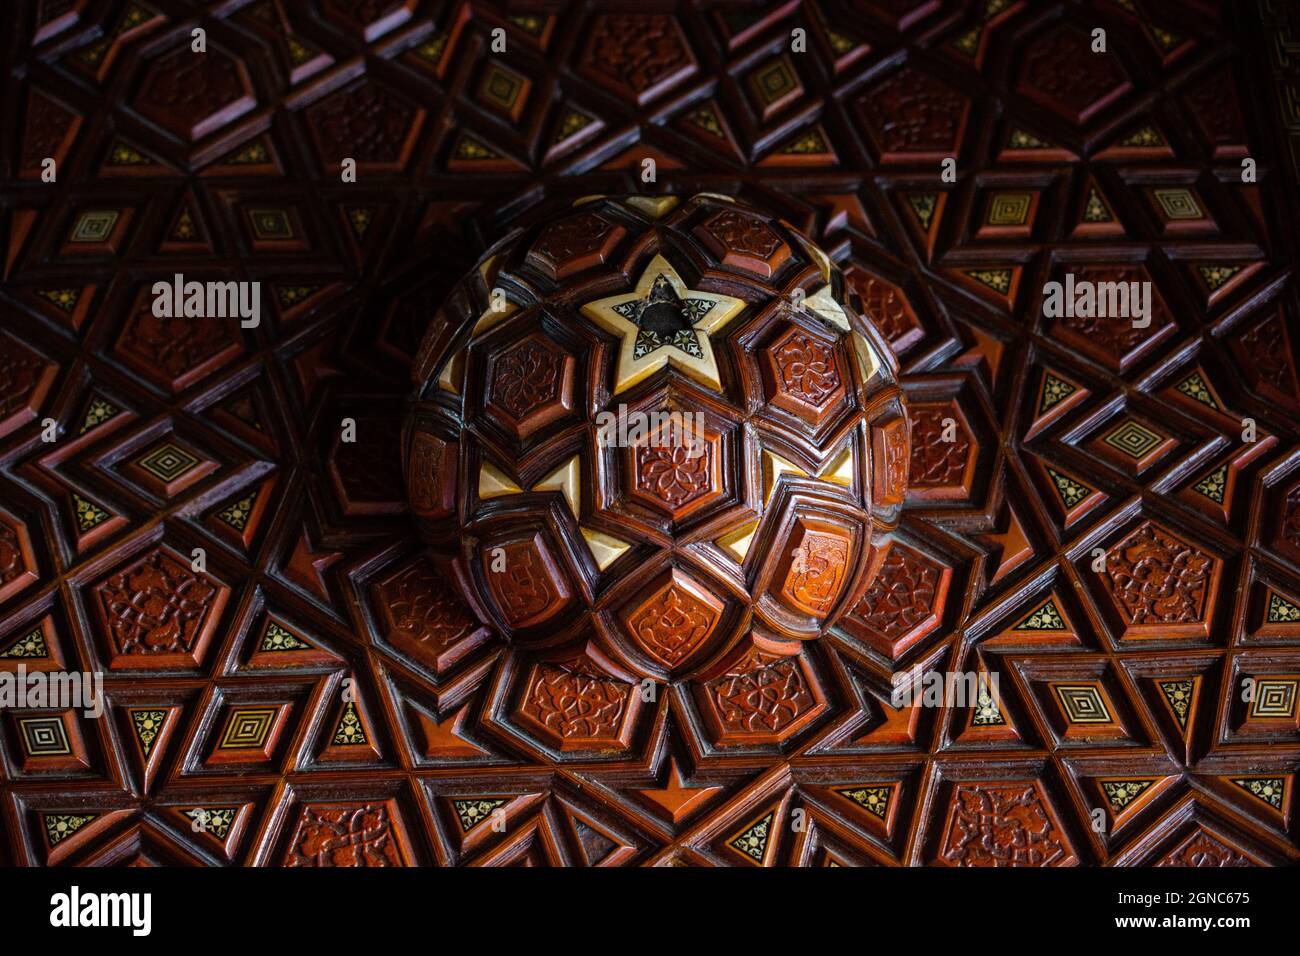 Gros plan sur l'art turc ottoman avec motifs géométriques sur bois Banque D'Images